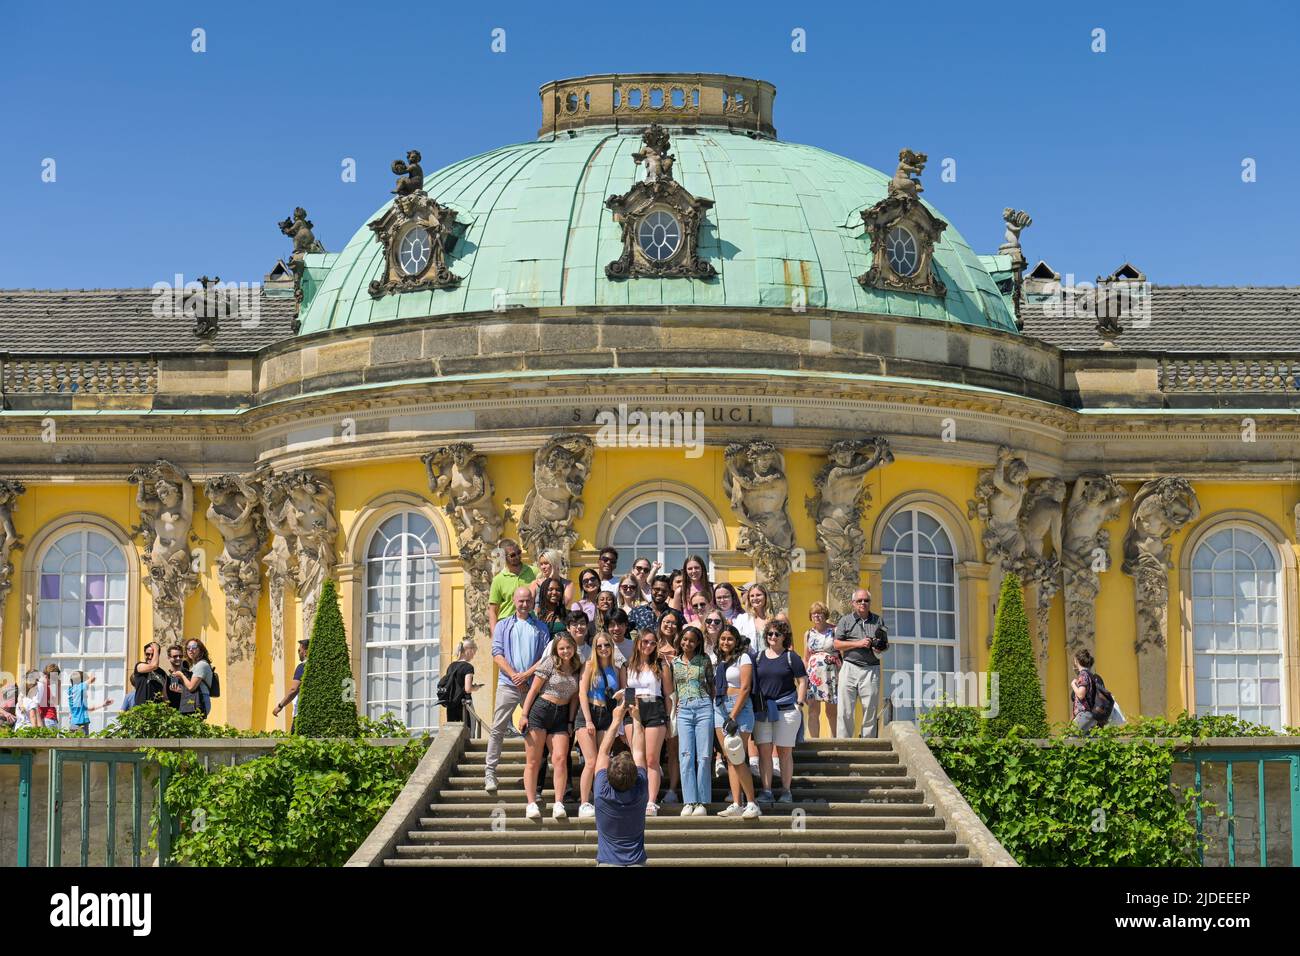 Gruppenfoto, Touristen, Große Freitreppe, Schloß Sanssouci, Potsdam, Brandenburg, Deutschland / No model release Stock Photo